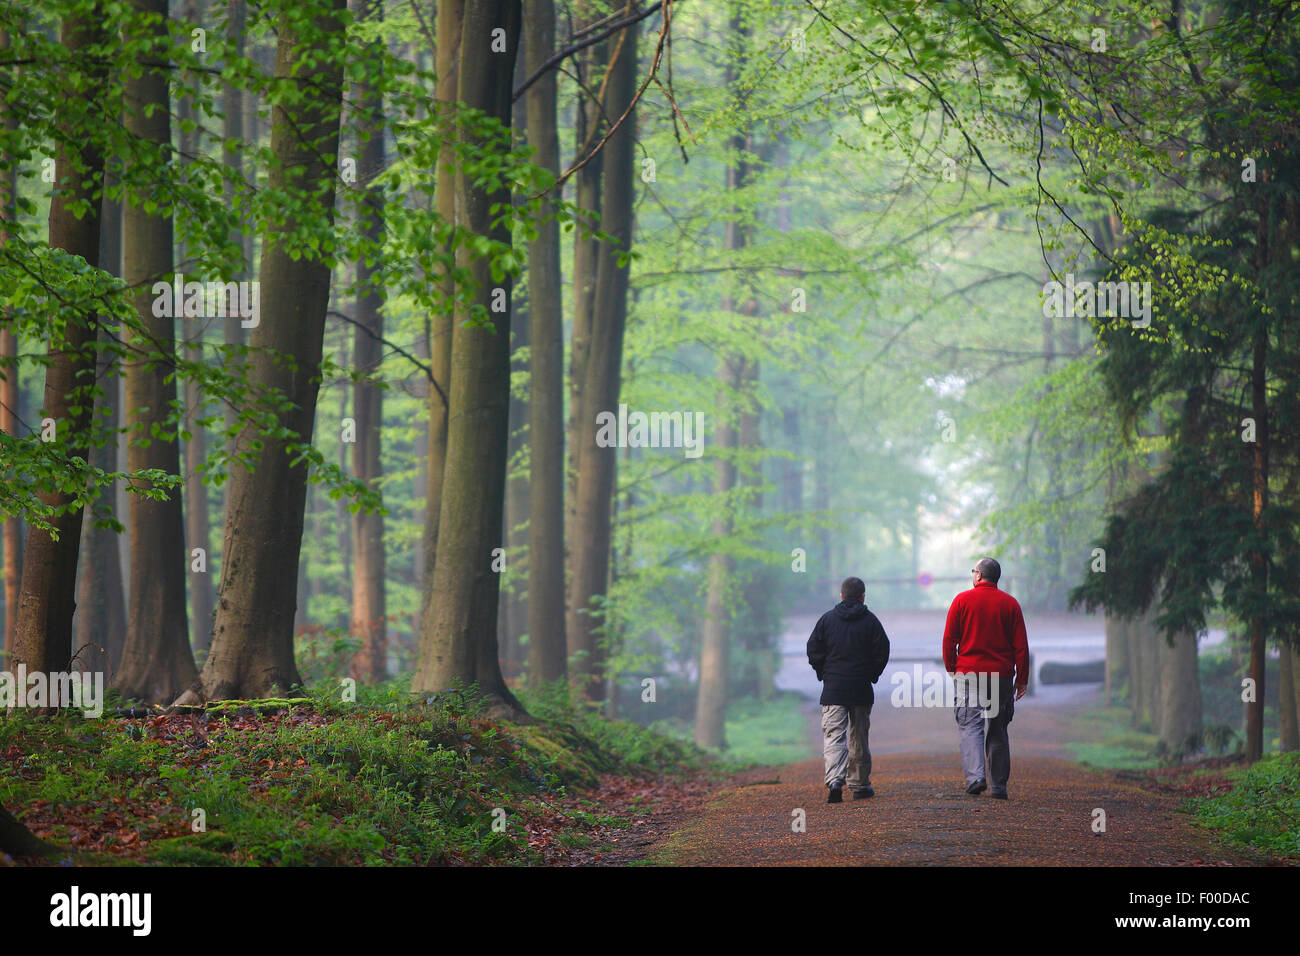 two walkers in beech forest, Belgium, Hallerbos Stock Photo